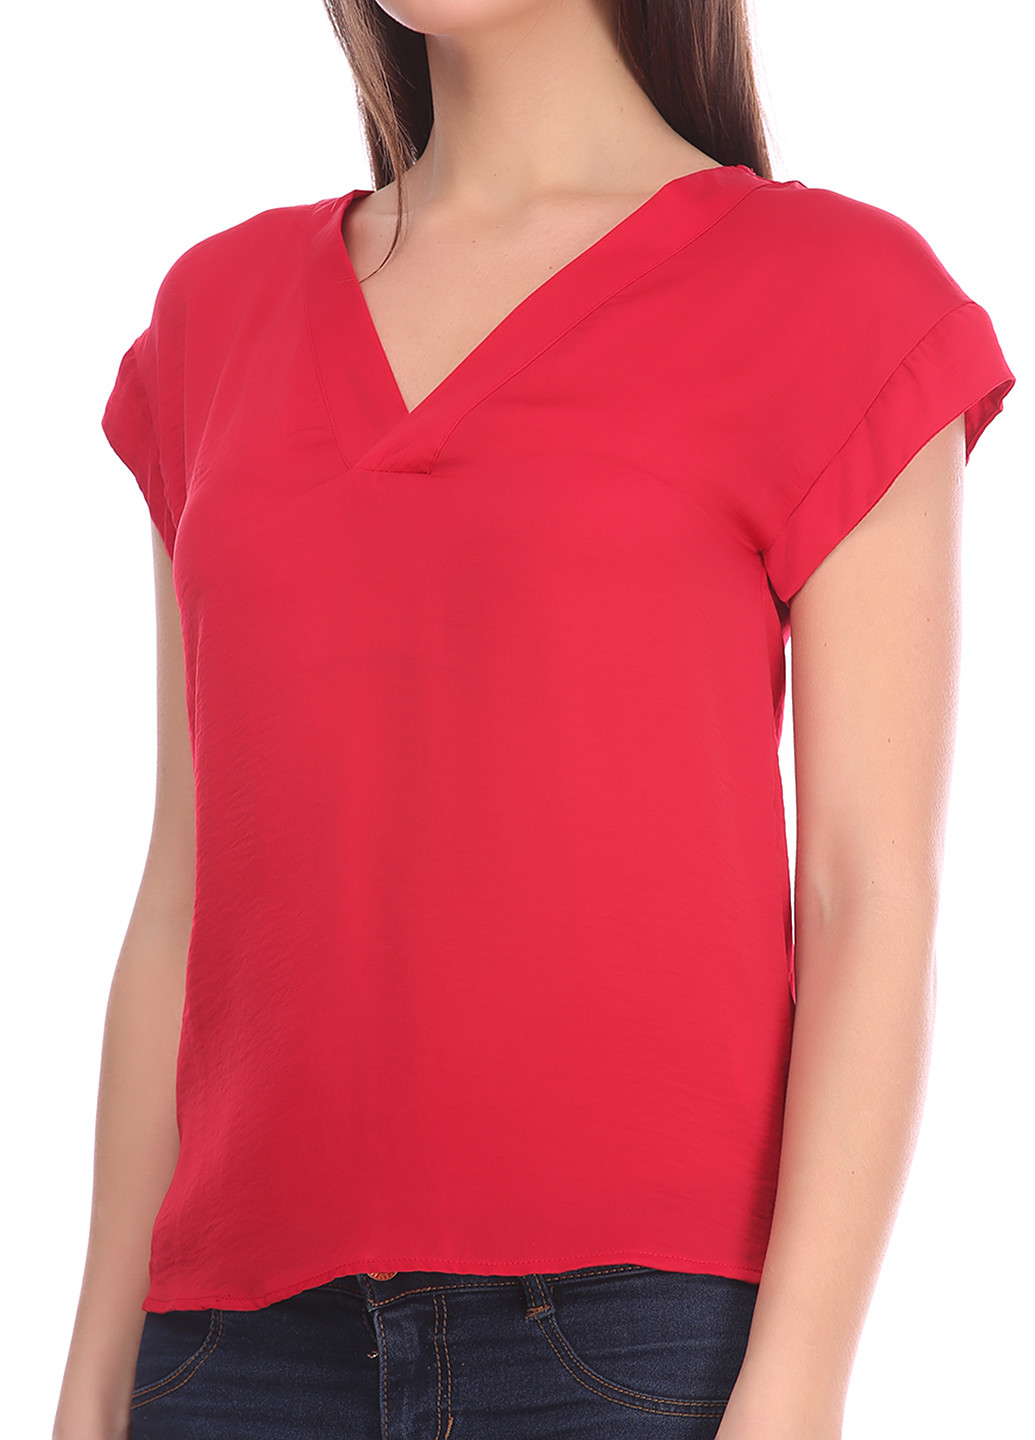 Красная летняя блуза Friendtex